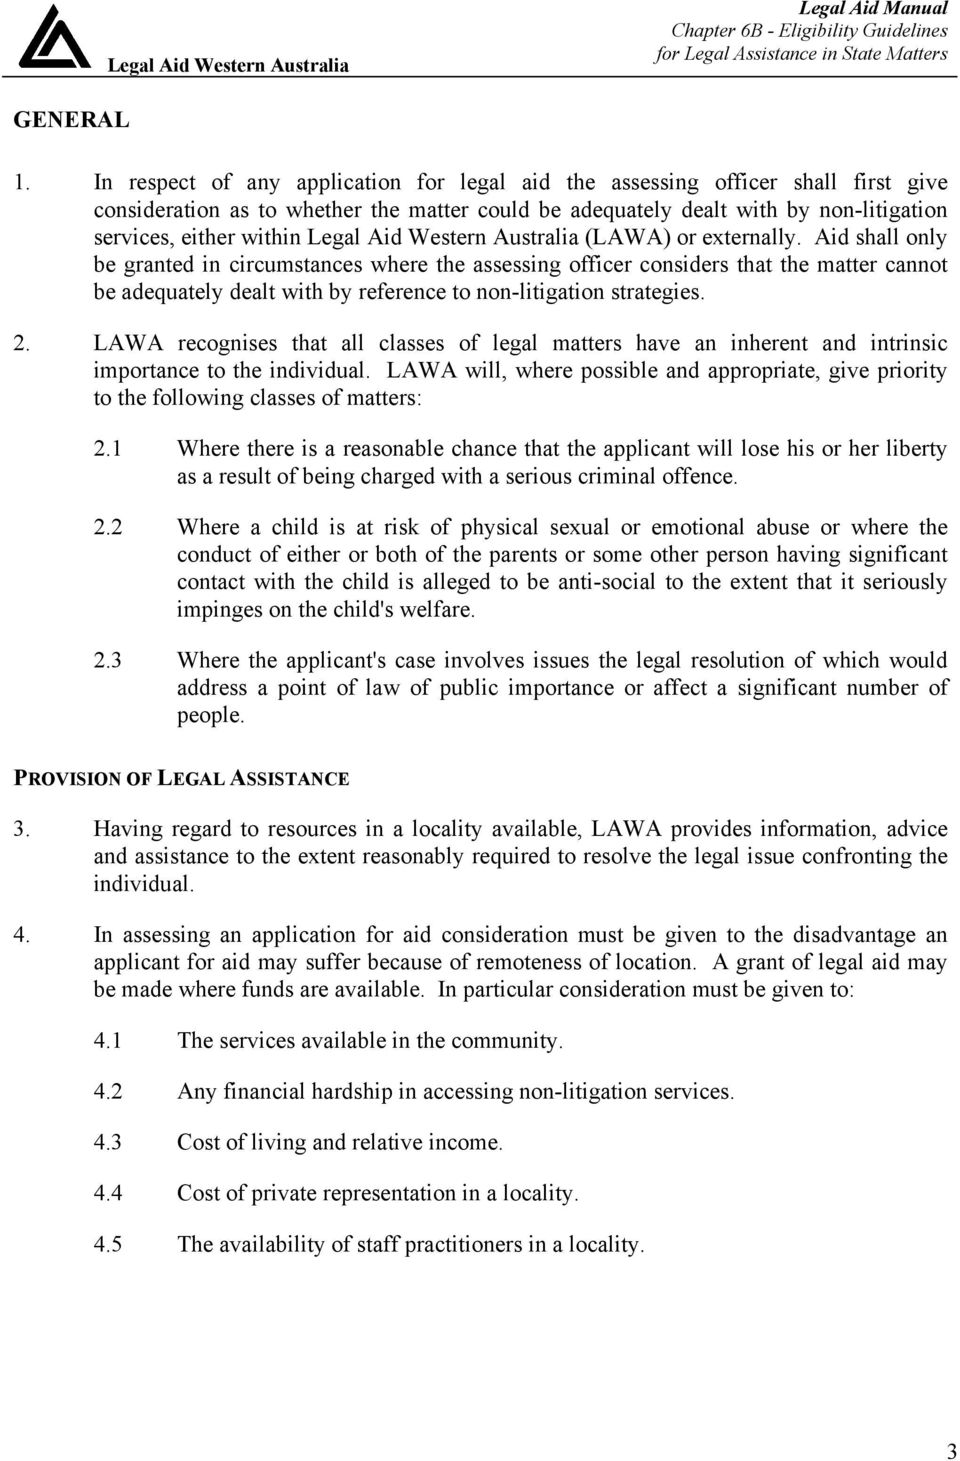 Legal Aid Western Australia (LAWA) or externally.